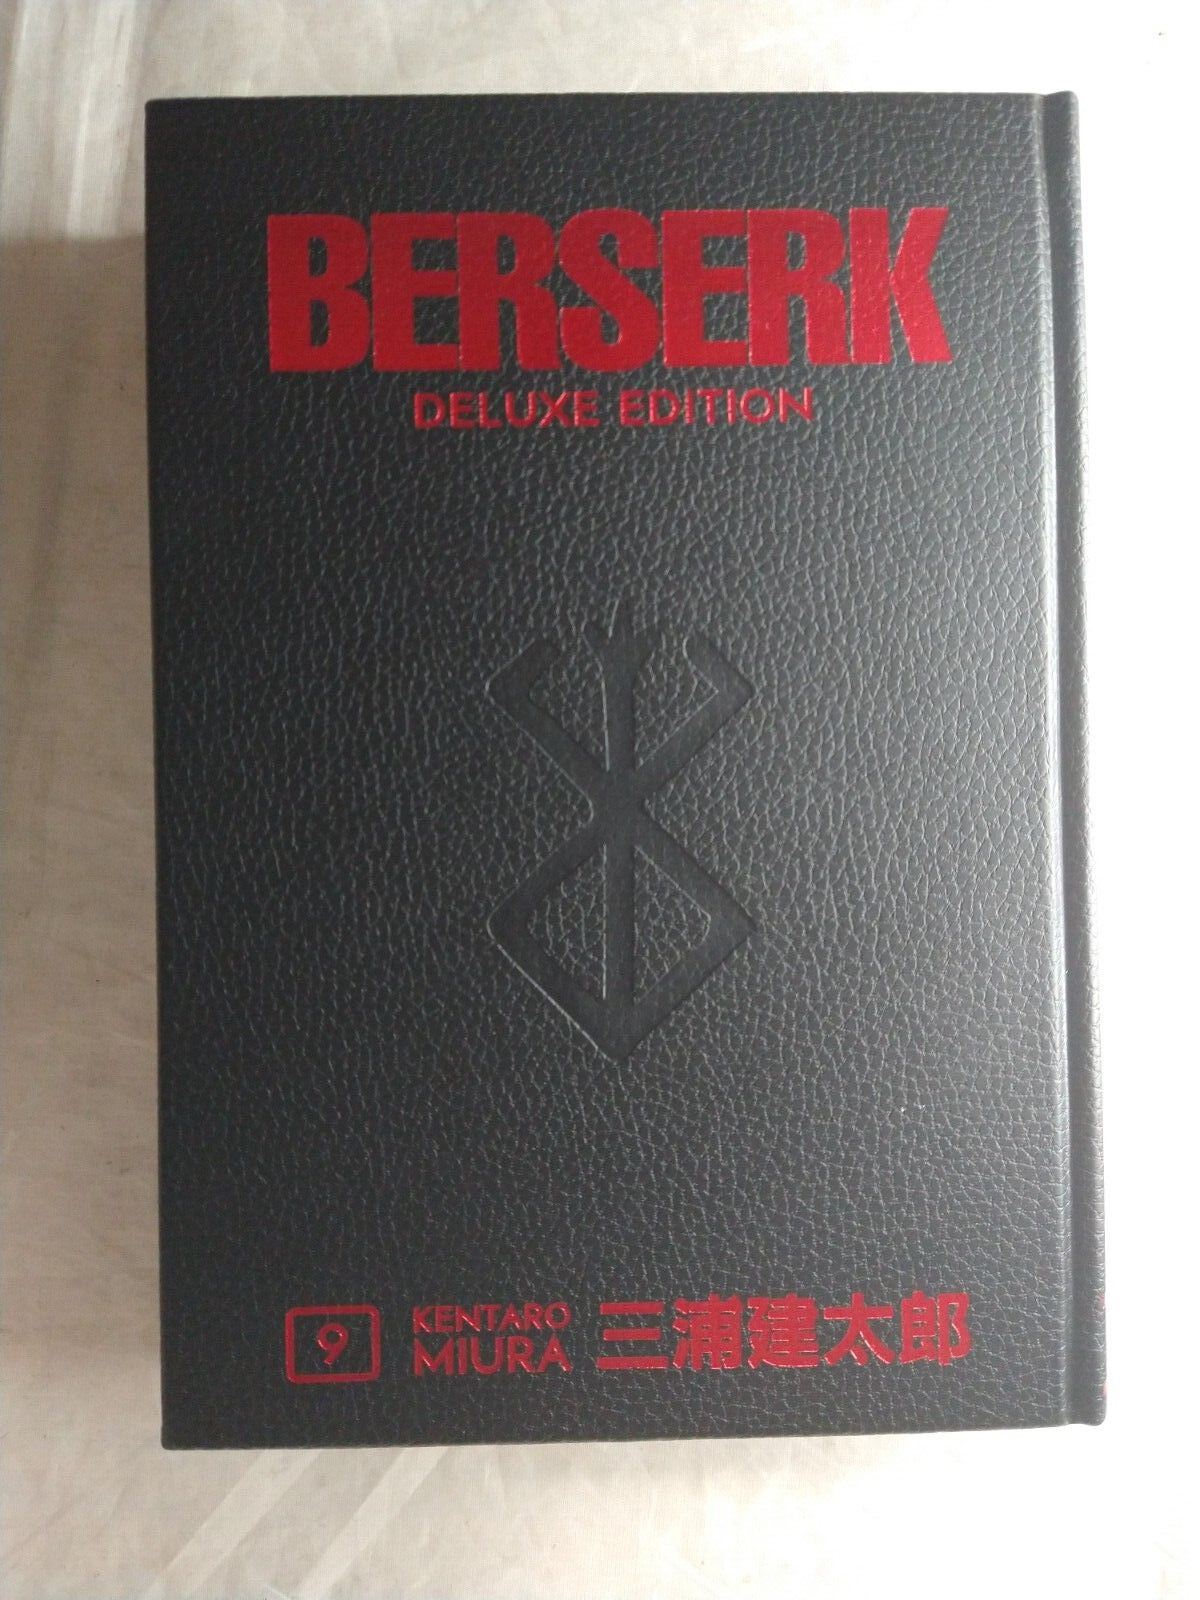 Berserk Deluxe Volume 9 Hardcover Kentaro Miura Dark Horse Comics